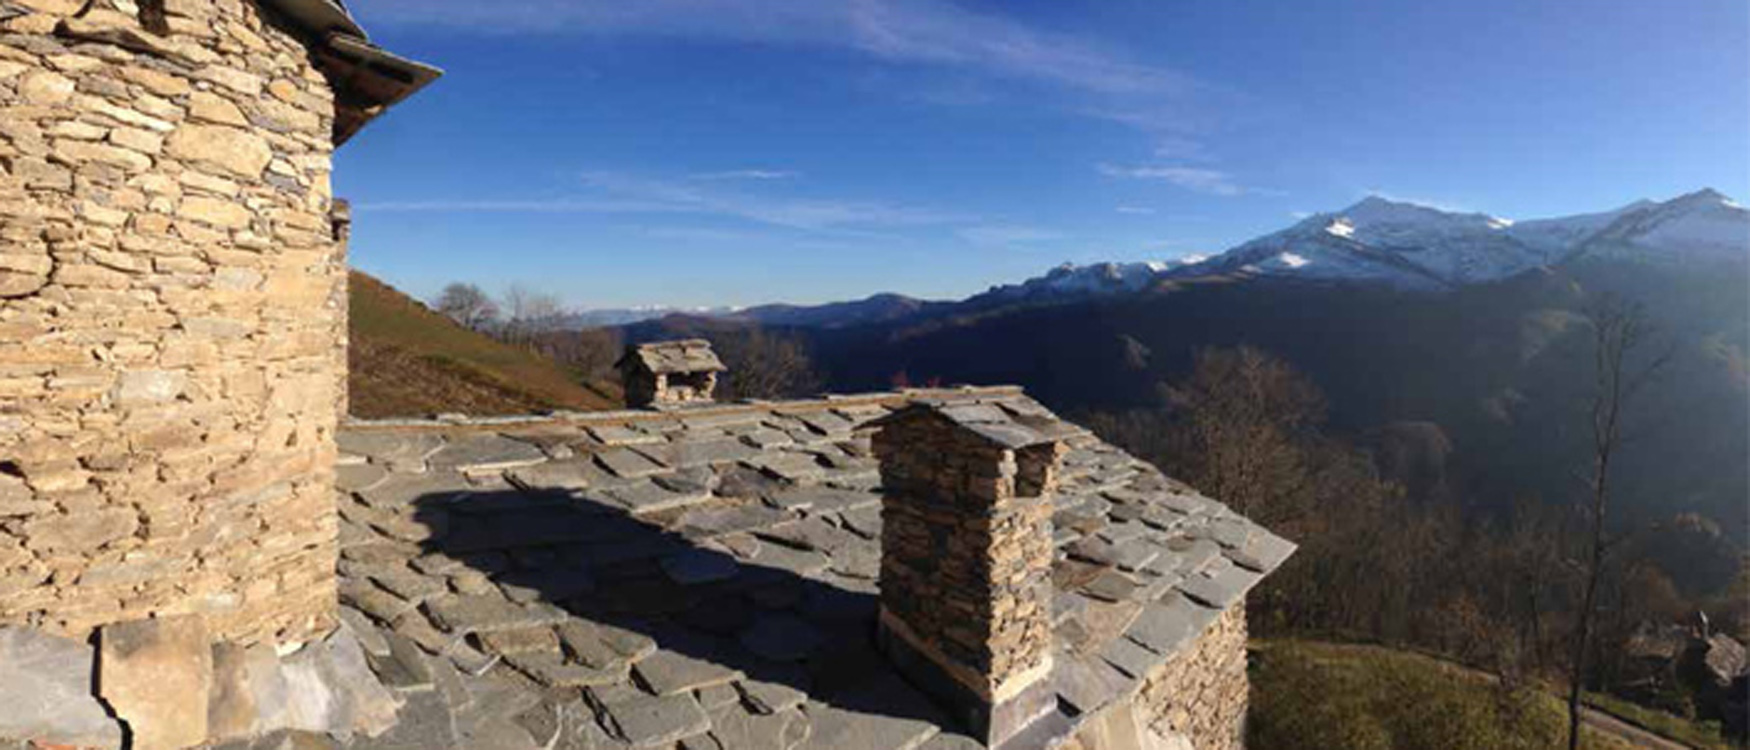 II tetti e il panorama @ Campofei: incontro tra tradizione e innovazione. Castelmagno (CN)